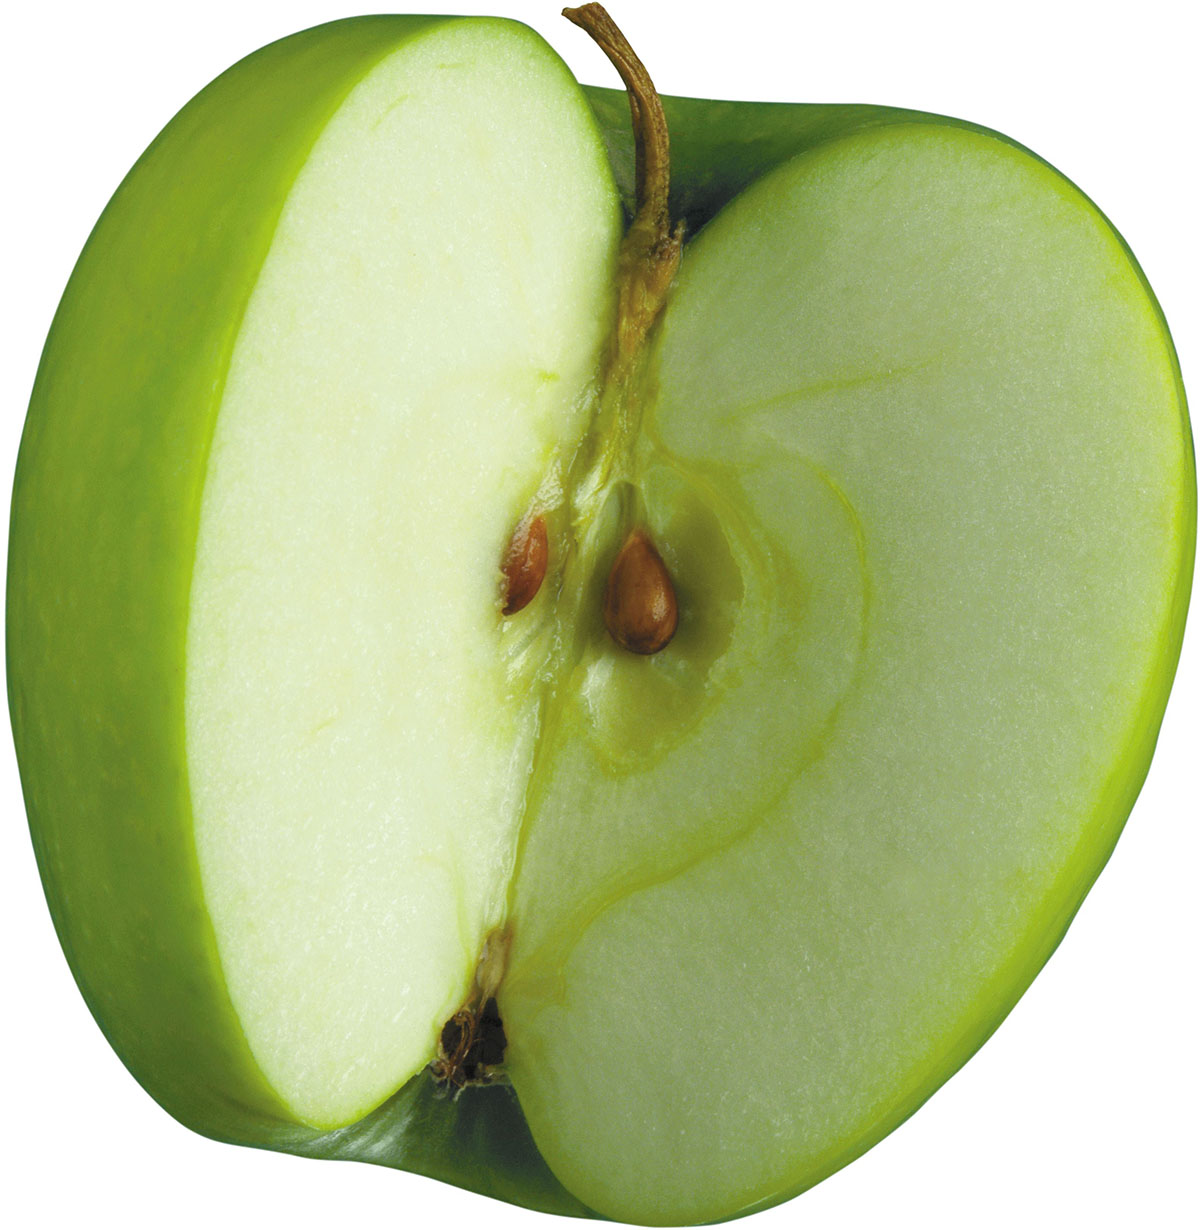 Две трети яблока. Половинка яблока. Яблоко в разрезе. Зеленое яблоко в разрезе. Yabloko v razreze.